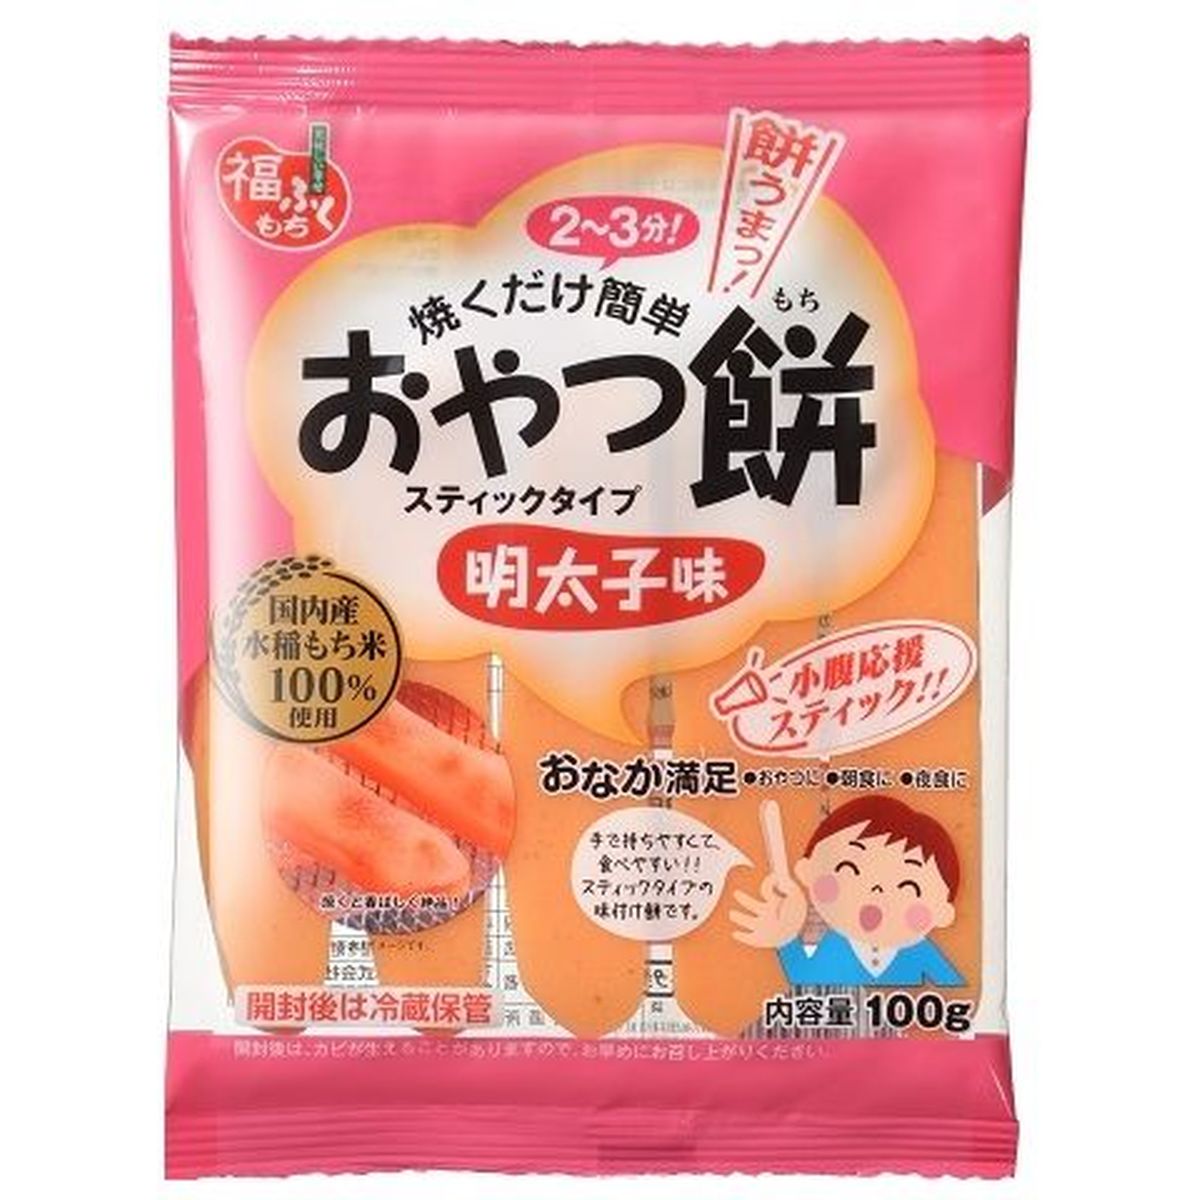 【20個入リ】マルシン食品 オヤツ餅 明太子味 100g